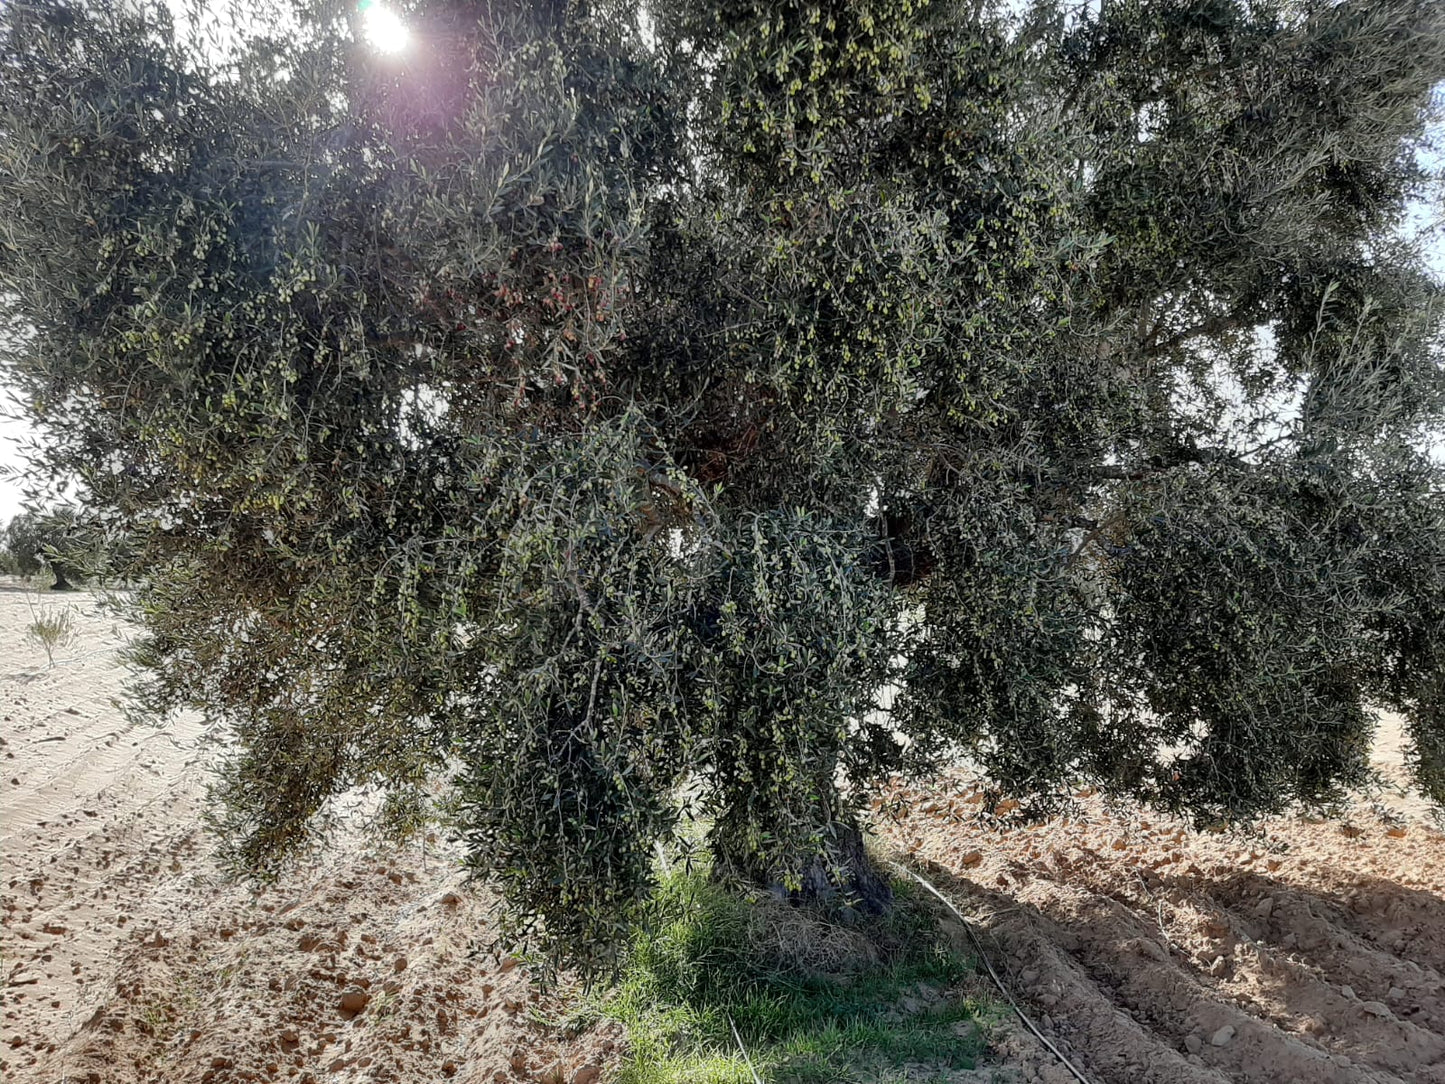 500 ml Frisches und neues Extra Virgin Olivenöl der neuen Ernte 2022/2023 - OLEA KOTTI befreundeter Olivenbauer - Chetoui Olivenbaum niedriger Säuregehalt & hohes Polyphenolgehalt